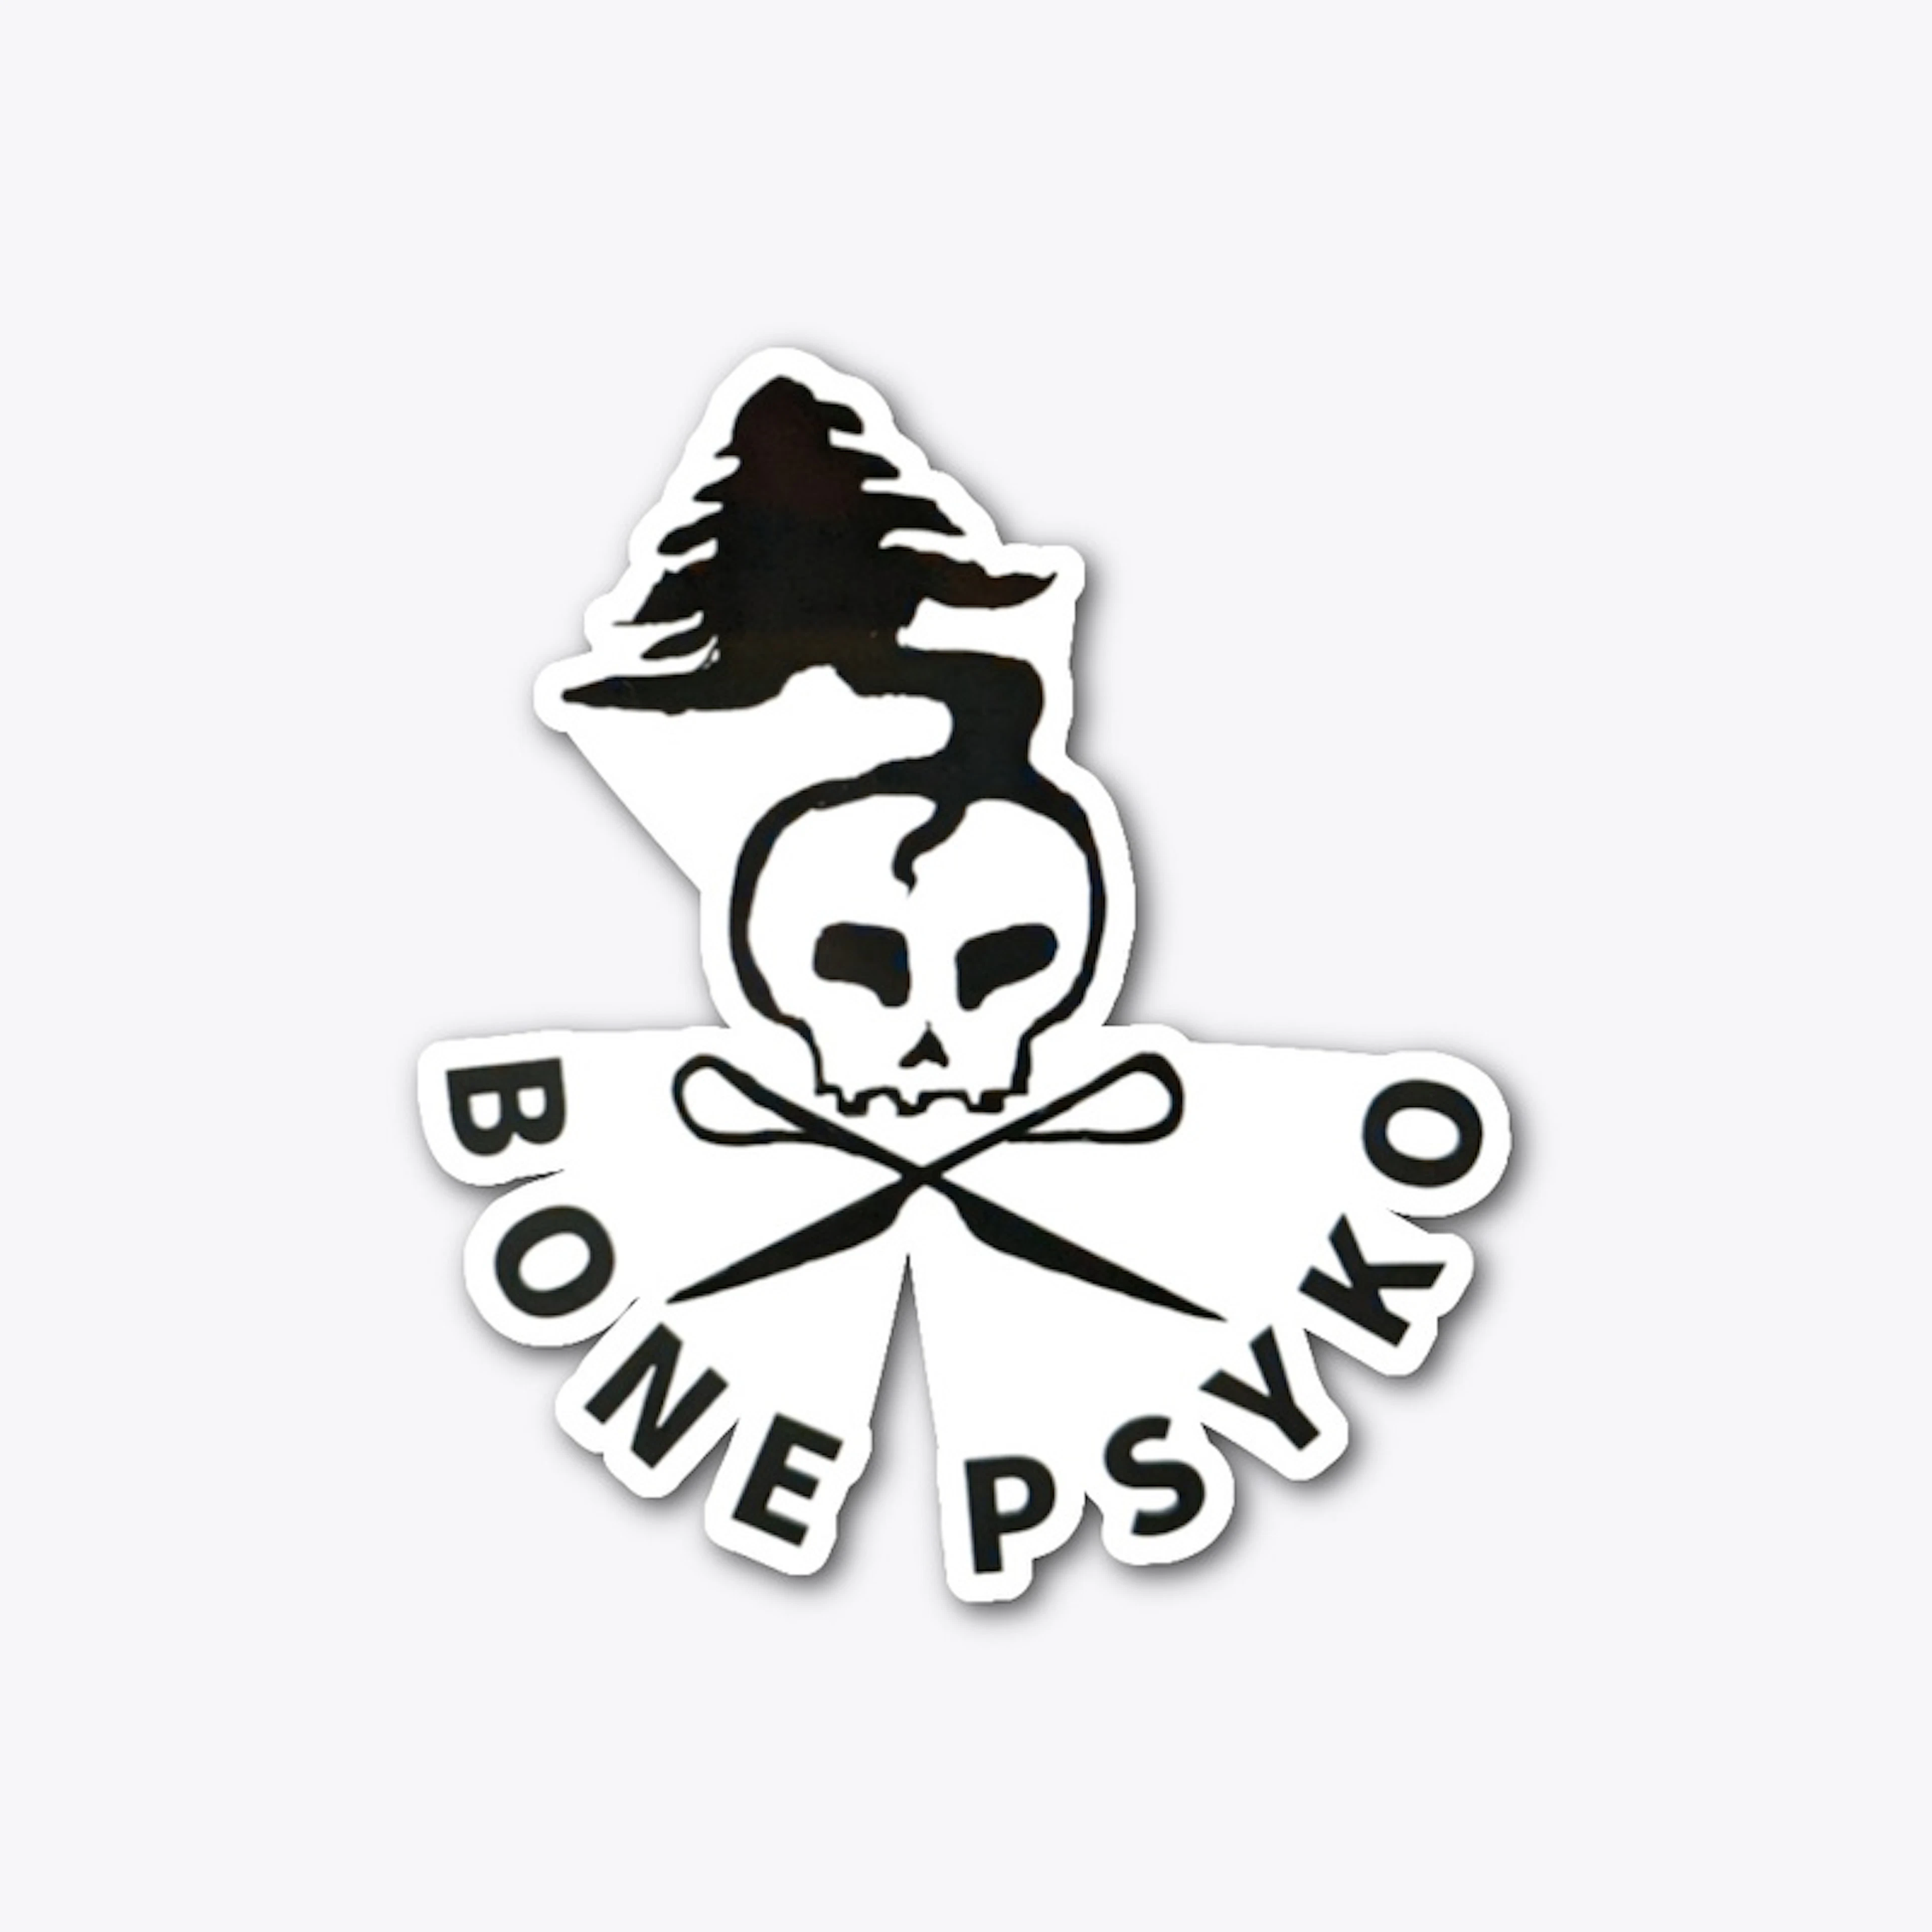 Classic Bone Psyko logo